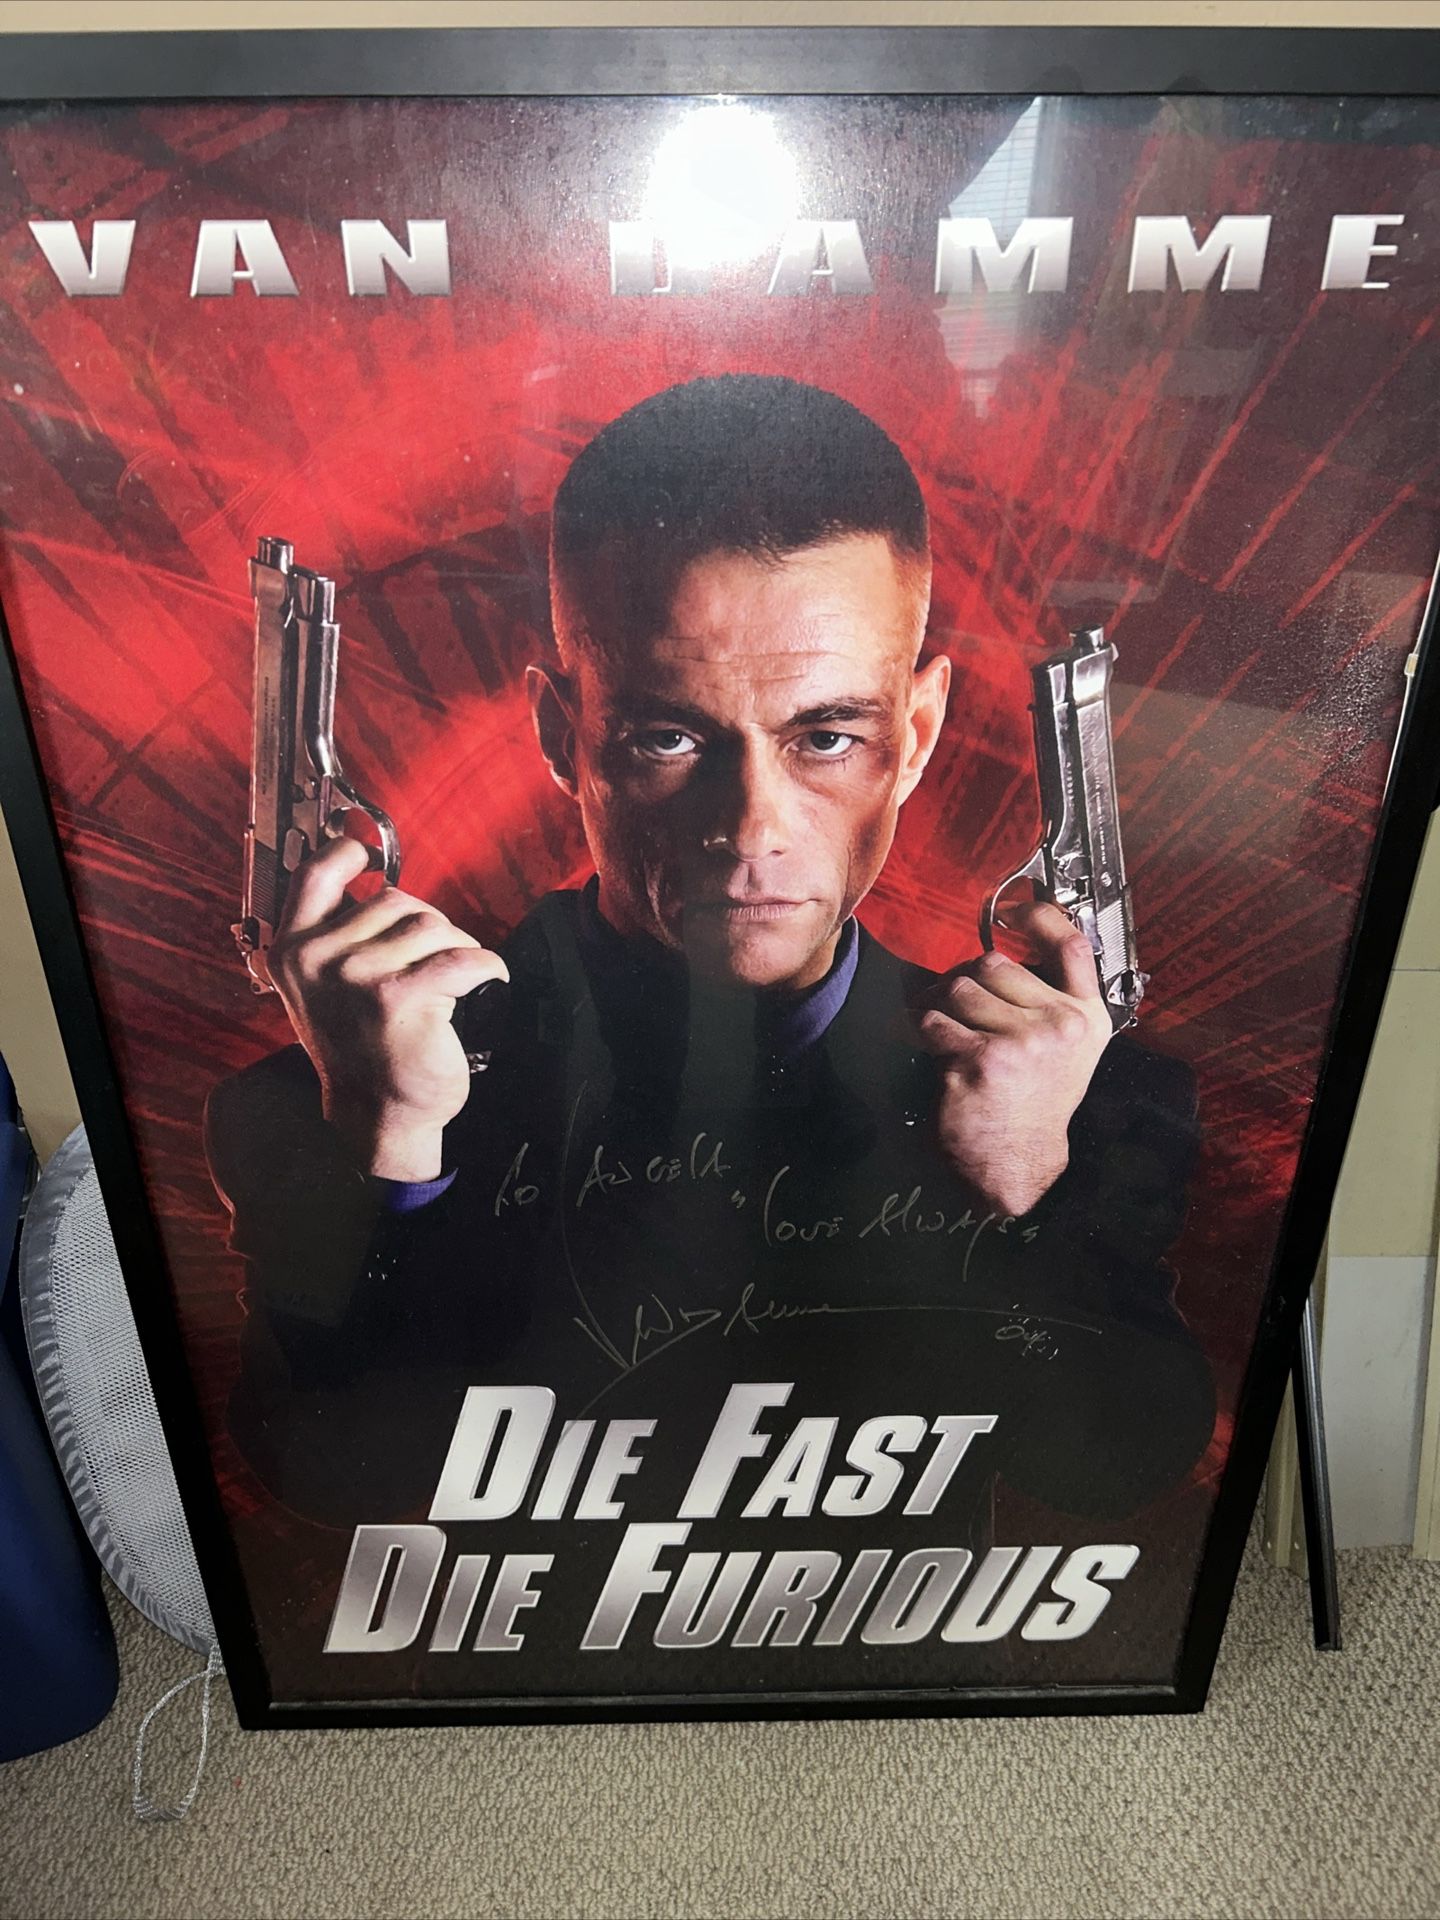 Movie Poster “Die Fast Die Furious” Signed Van Damme